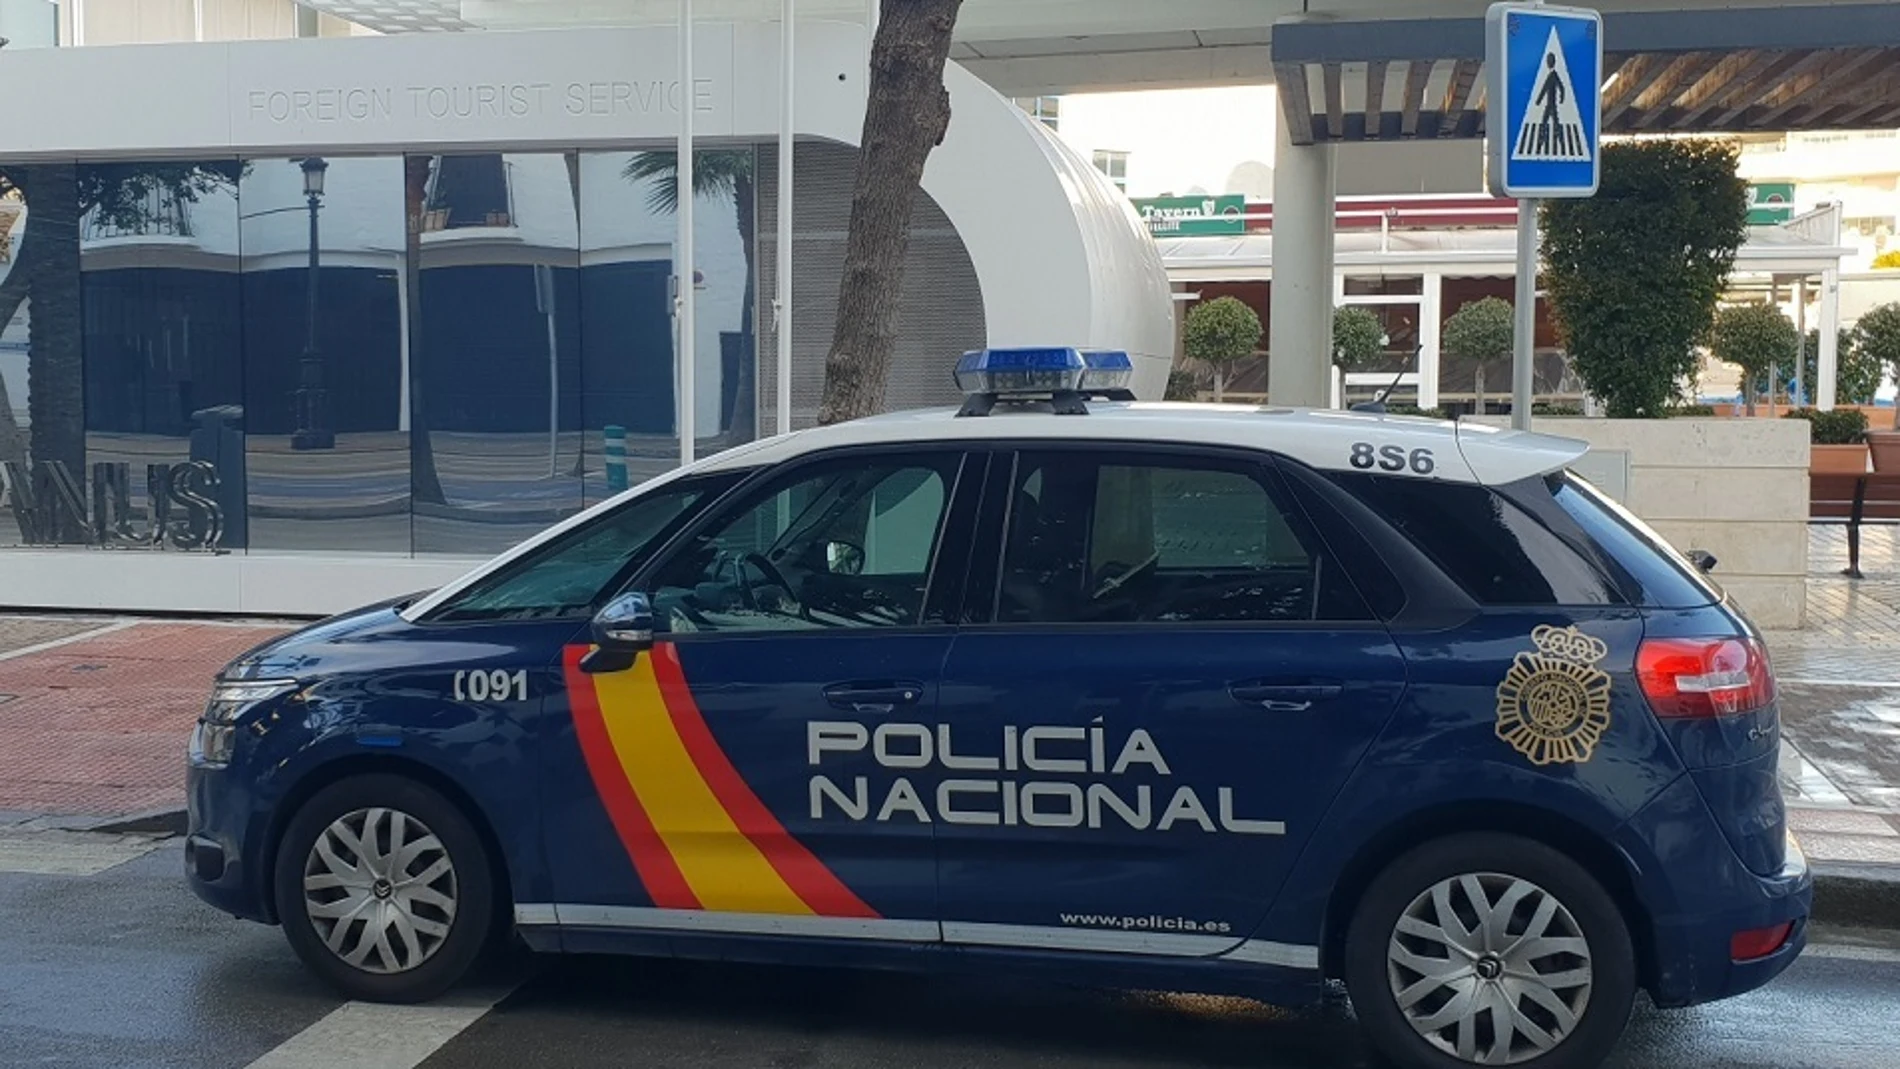 Imagen de un vehículo de la Policía Nacional en Málaga